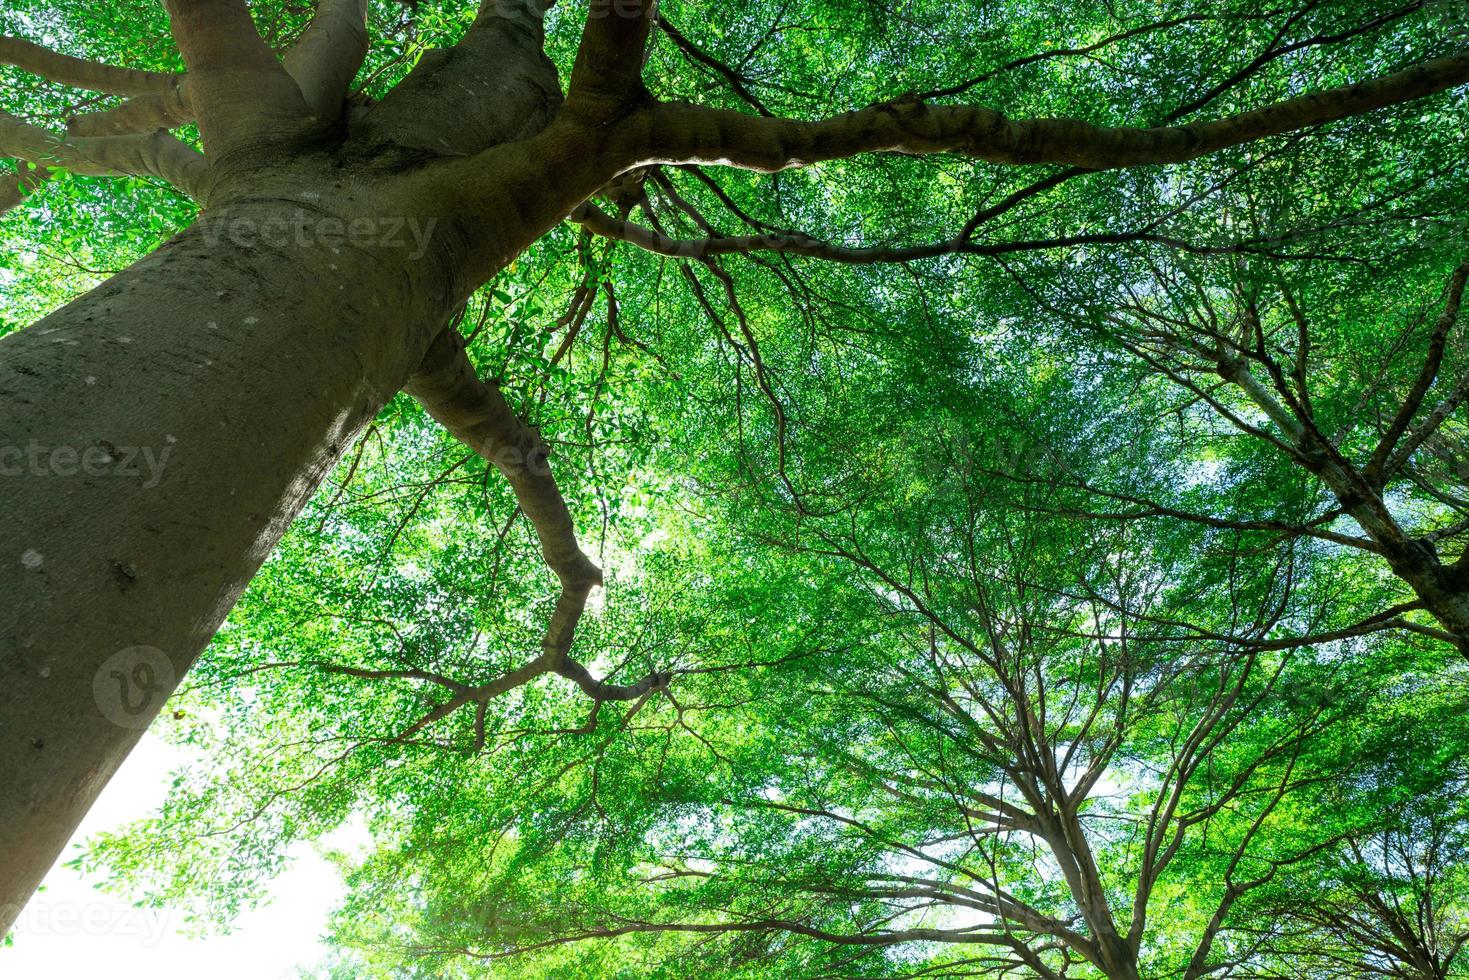 enfoque selectivo en el árbol. vista inferior del tronco del árbol a las hojas verdes de un gran árbol en el bosque tropical con luz solar. ambiente fresco en el parque. planta verde en el jardín de verano. árbol forestal con hojas pequeñas. foto